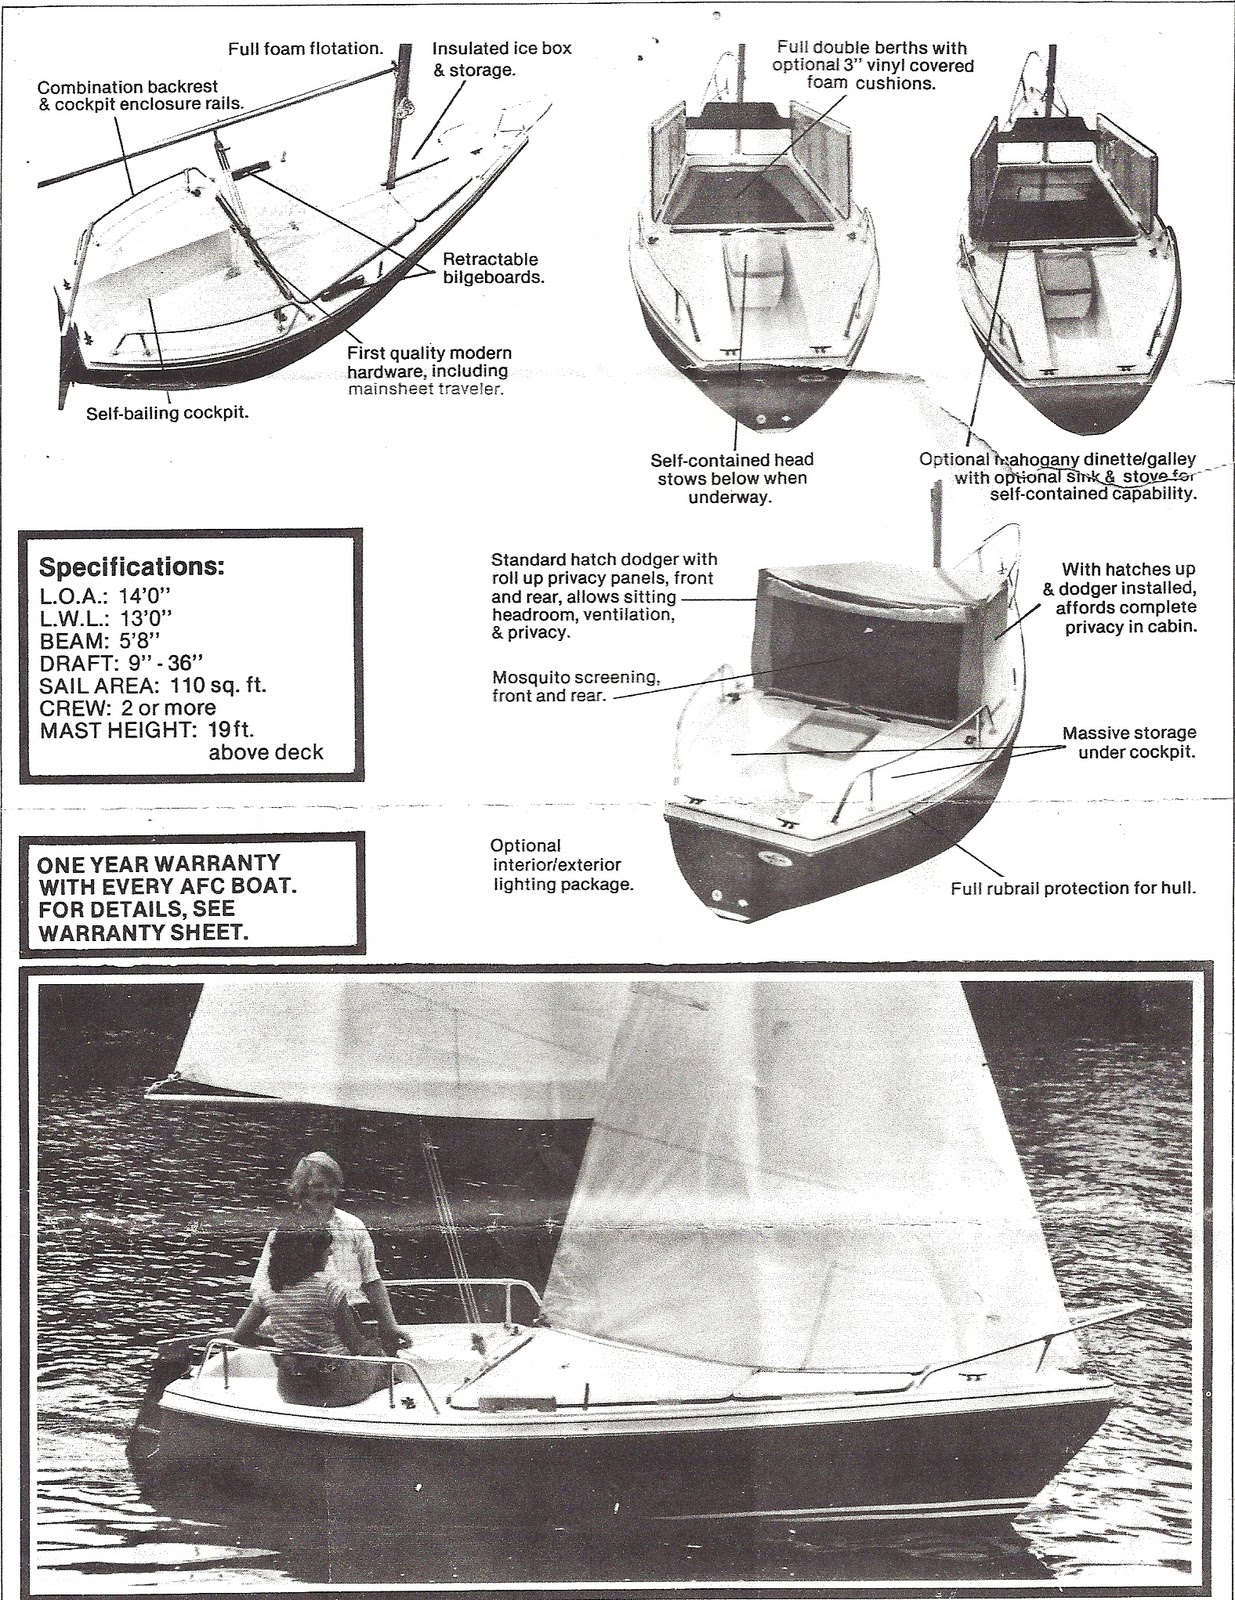 ... micro-cabin cruiser (a pop-top camper/tent meets a sailboat/shanyboat